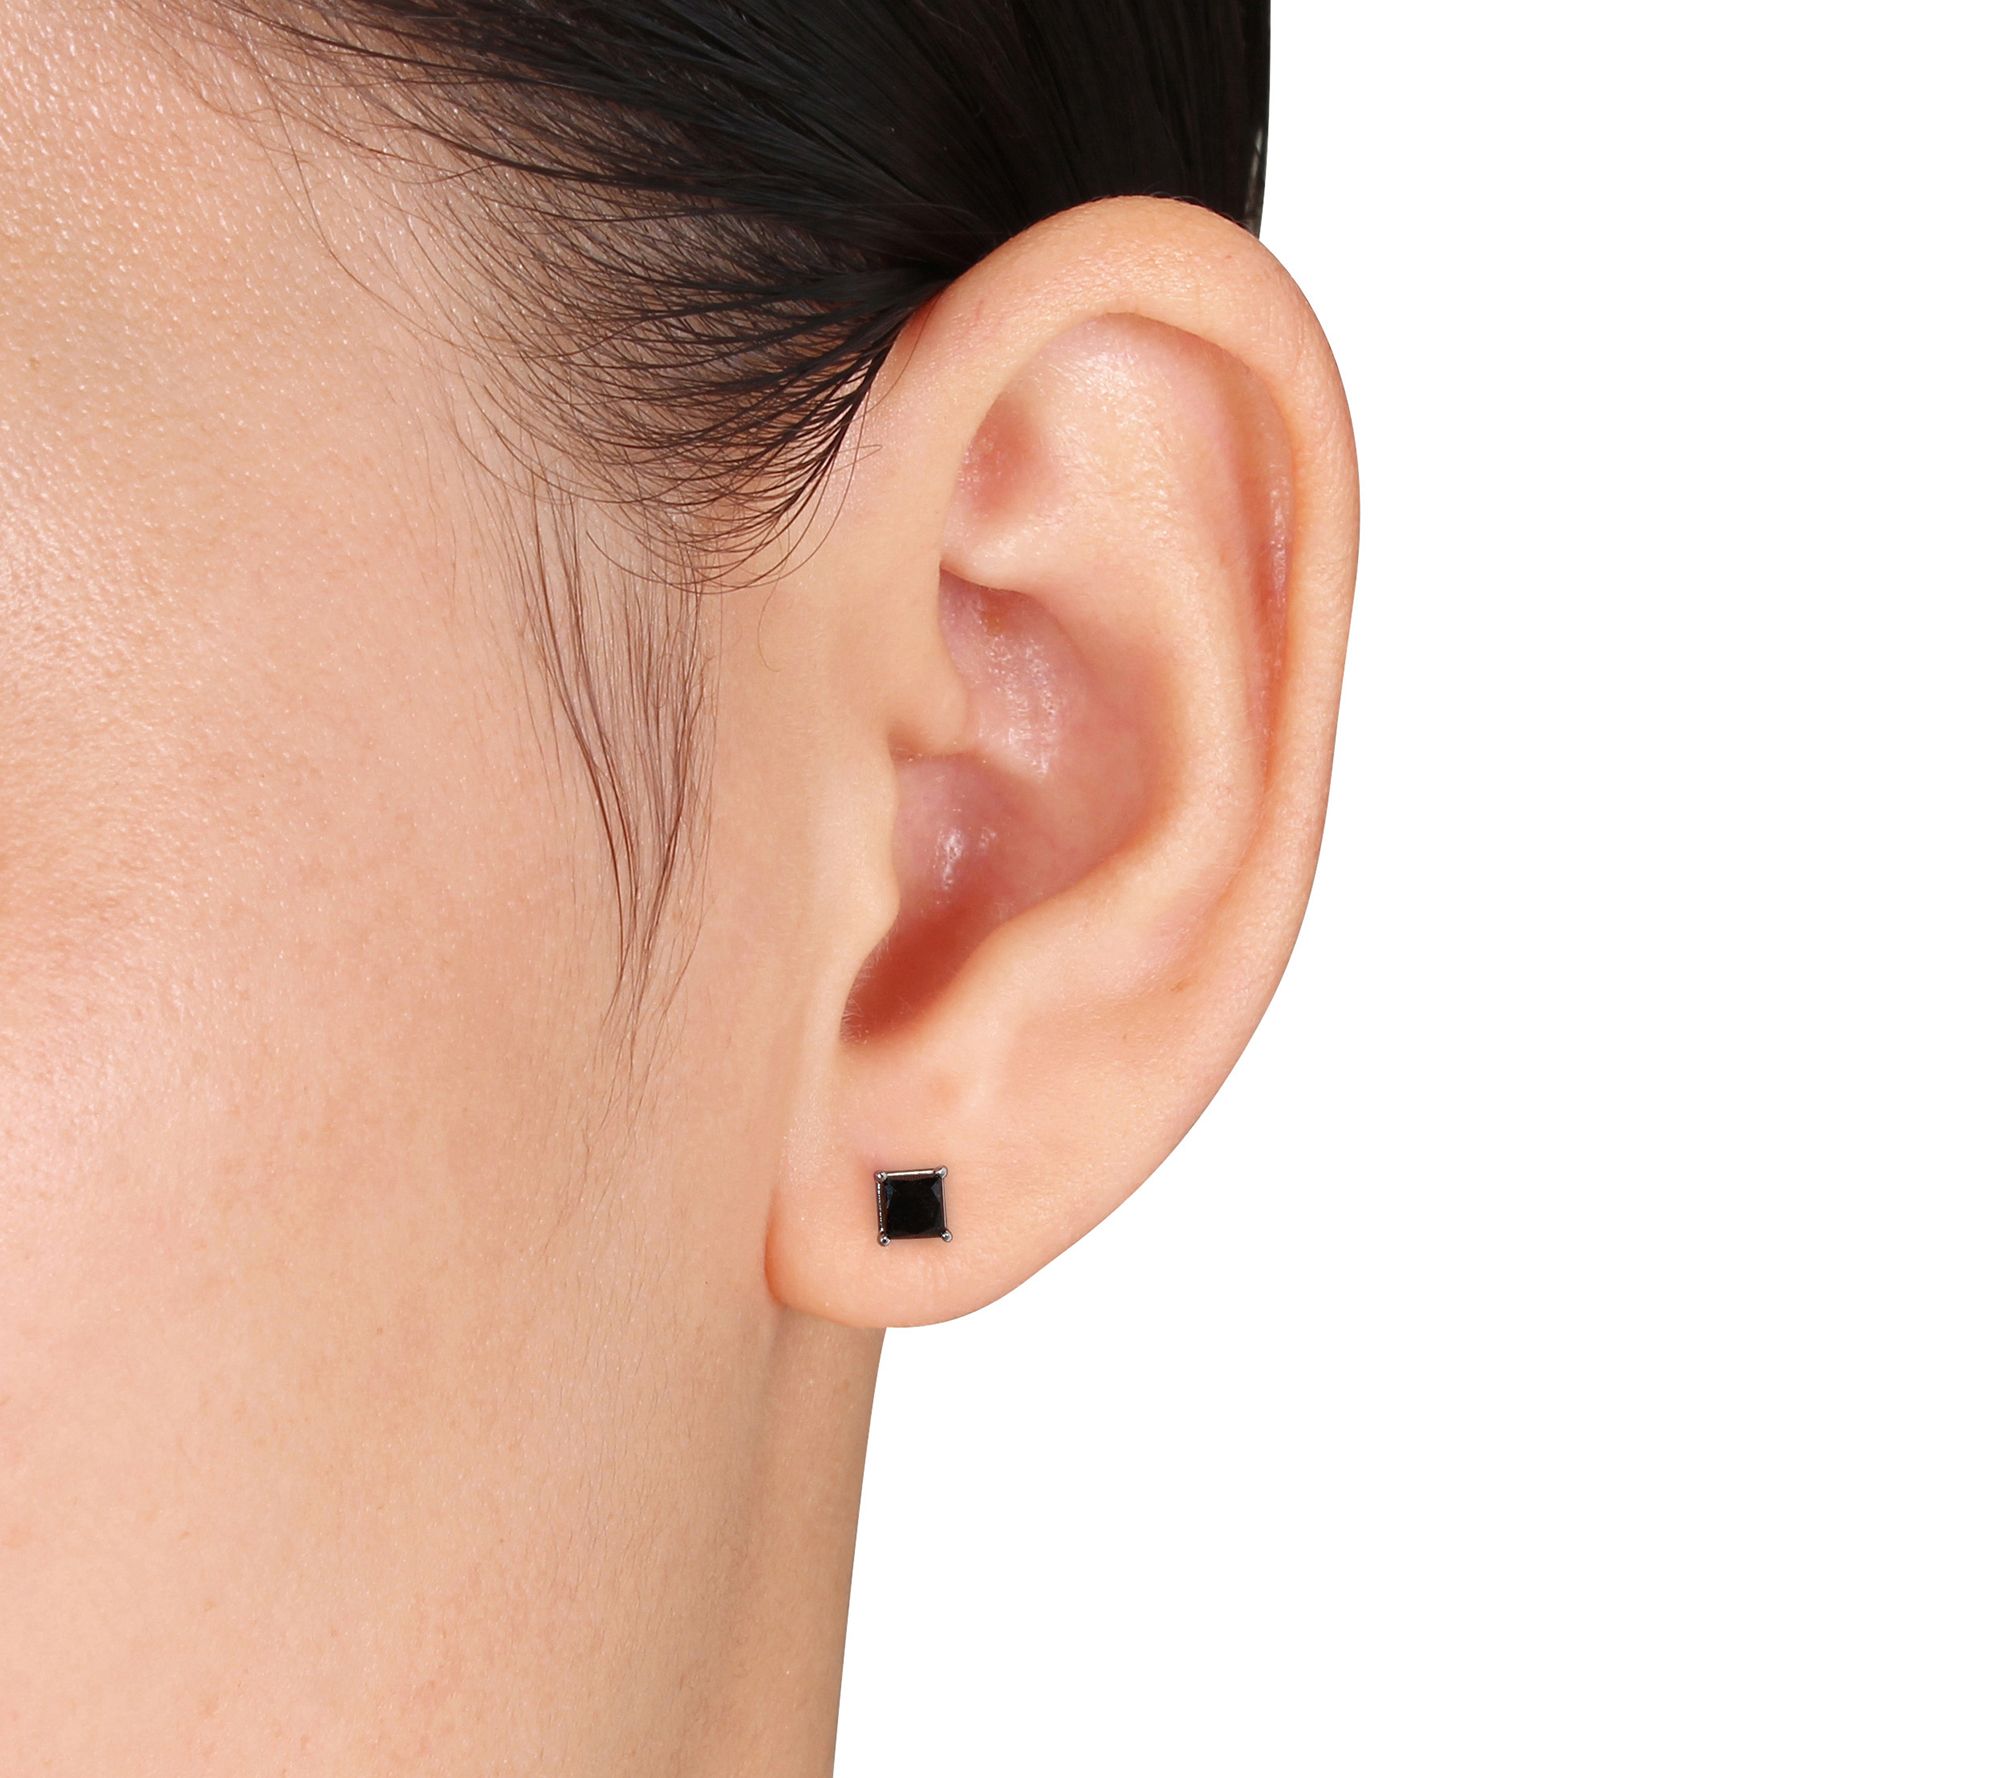 Black Glitter Razor Earrings with black diamond Detail